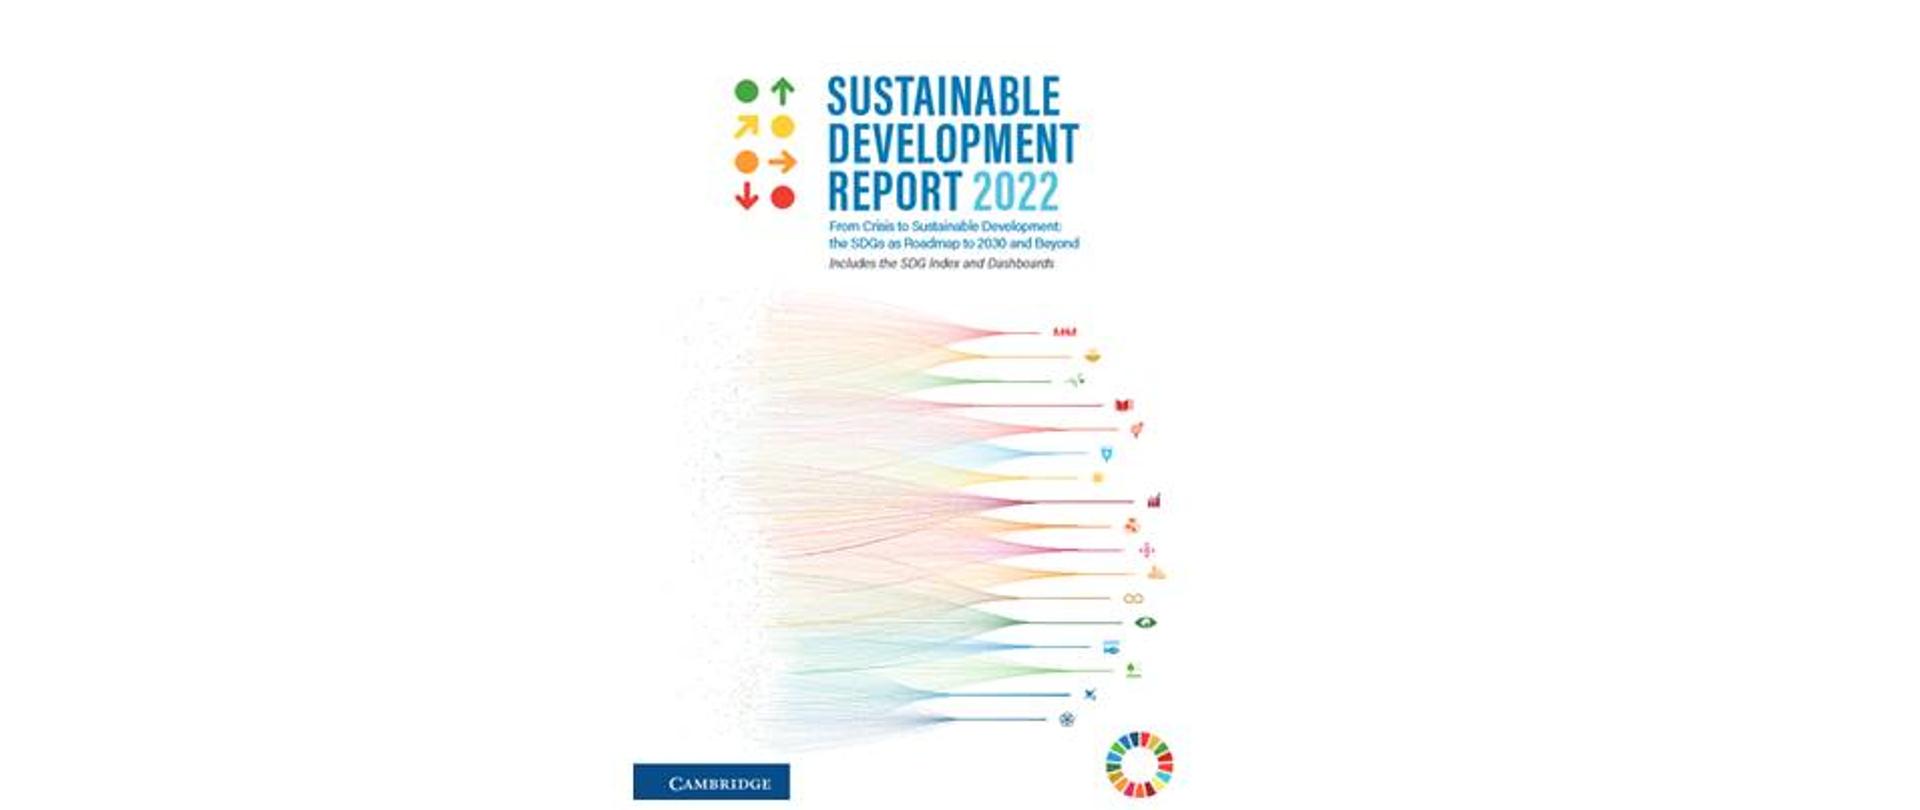 Na białej okładce widnieje tytuł raportu Sustainable Development Report 2022 zapisany niebieskimi literami. Obok tytułu są zielone, źółte, pomarańczowe i czerwone kropki i strzałki symbolizujące punkt startowy oraz kierunek (w nawiązaniu do sposobu prezentacji wskaźników raportu). Poniżej widoczne są liczne poziome linie w kolorach odpowiadających poszczególnym celom zrównoważonego rozwoju, dla których zbiorczymi punktami są ikony poszczególnych celów zrównoważonego rozwoju. 